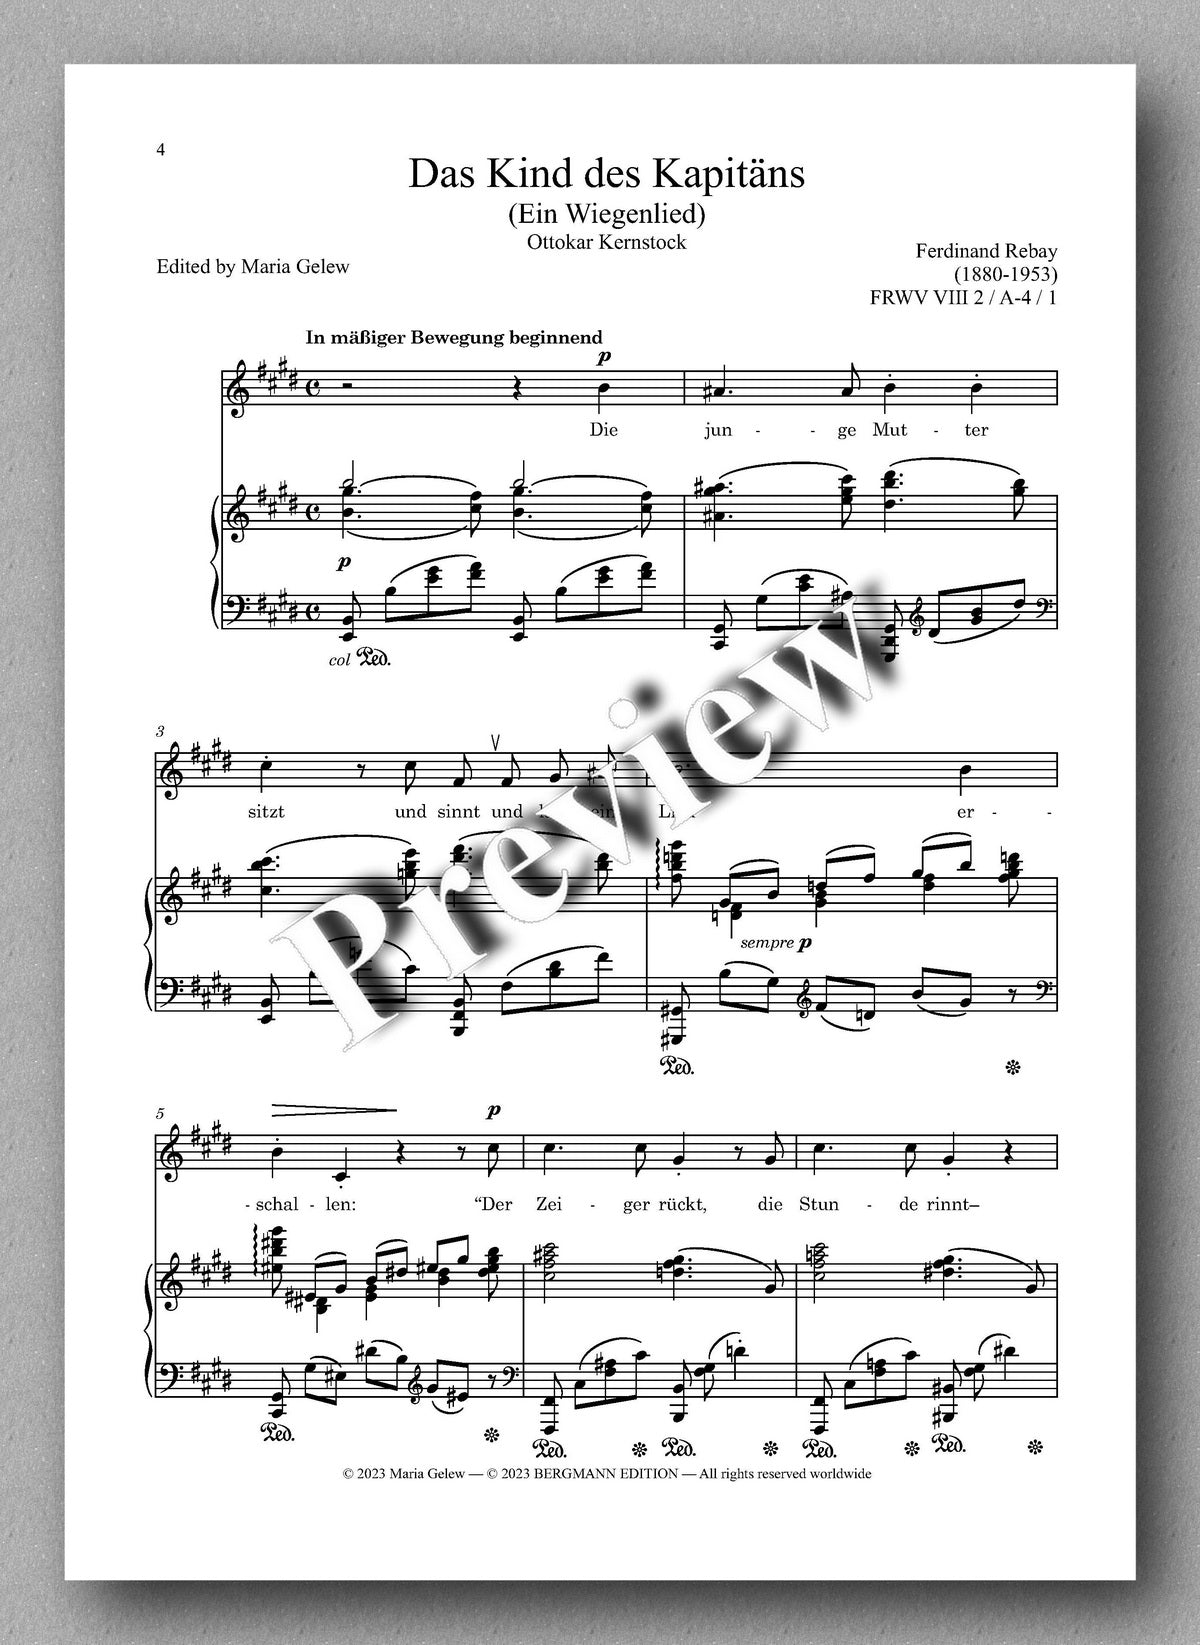 Ferdinand Rebay, Lieder nach Gedichten von Ottokar Kernstock und Kurt Falk - preview of the music score 1